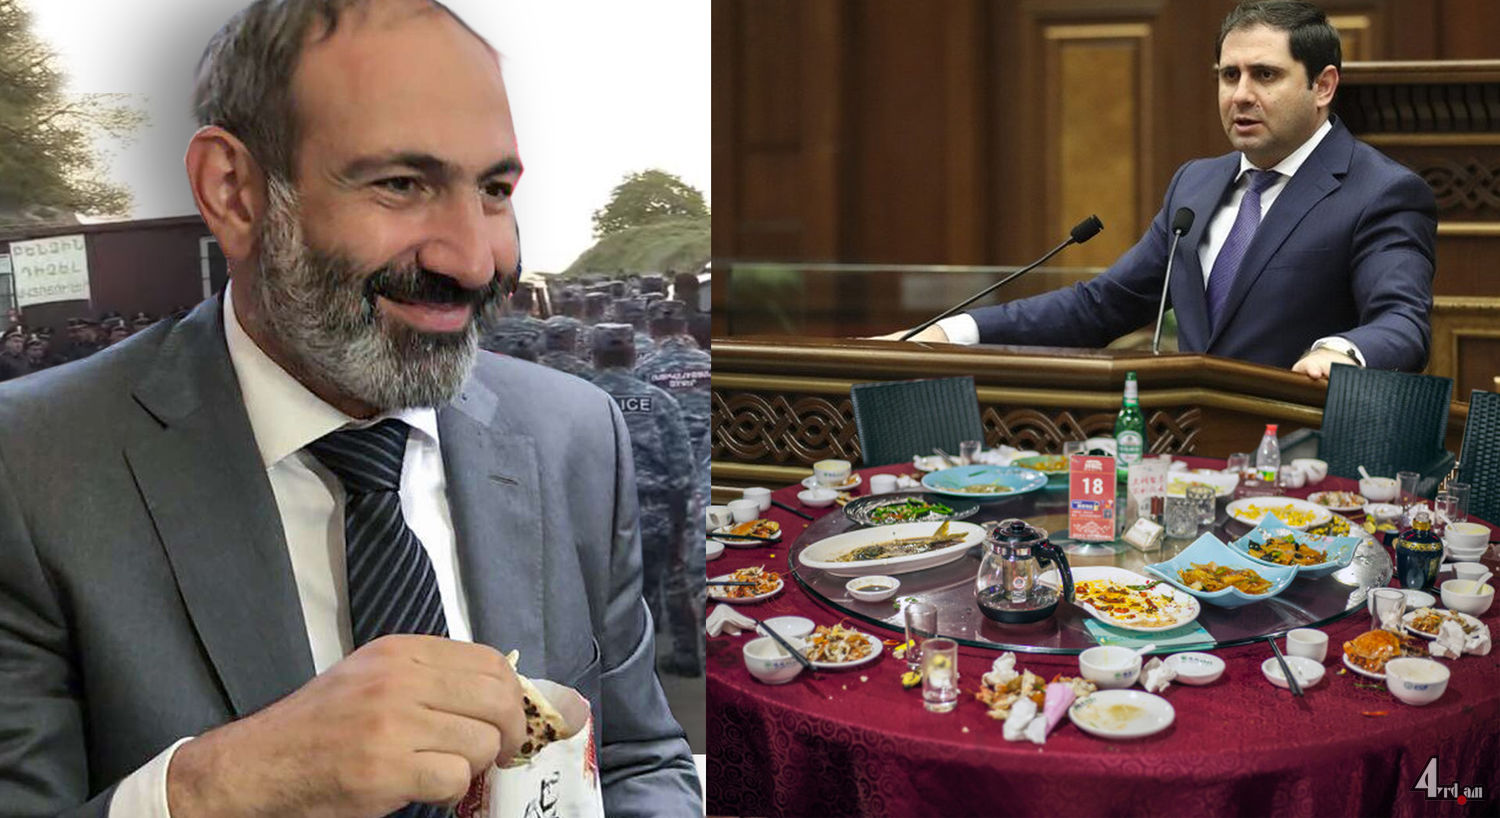 Էդ ուտելիքը ափսոս չի՞, փաթաթեք՝ պարոն վարչապետը հետը տանի